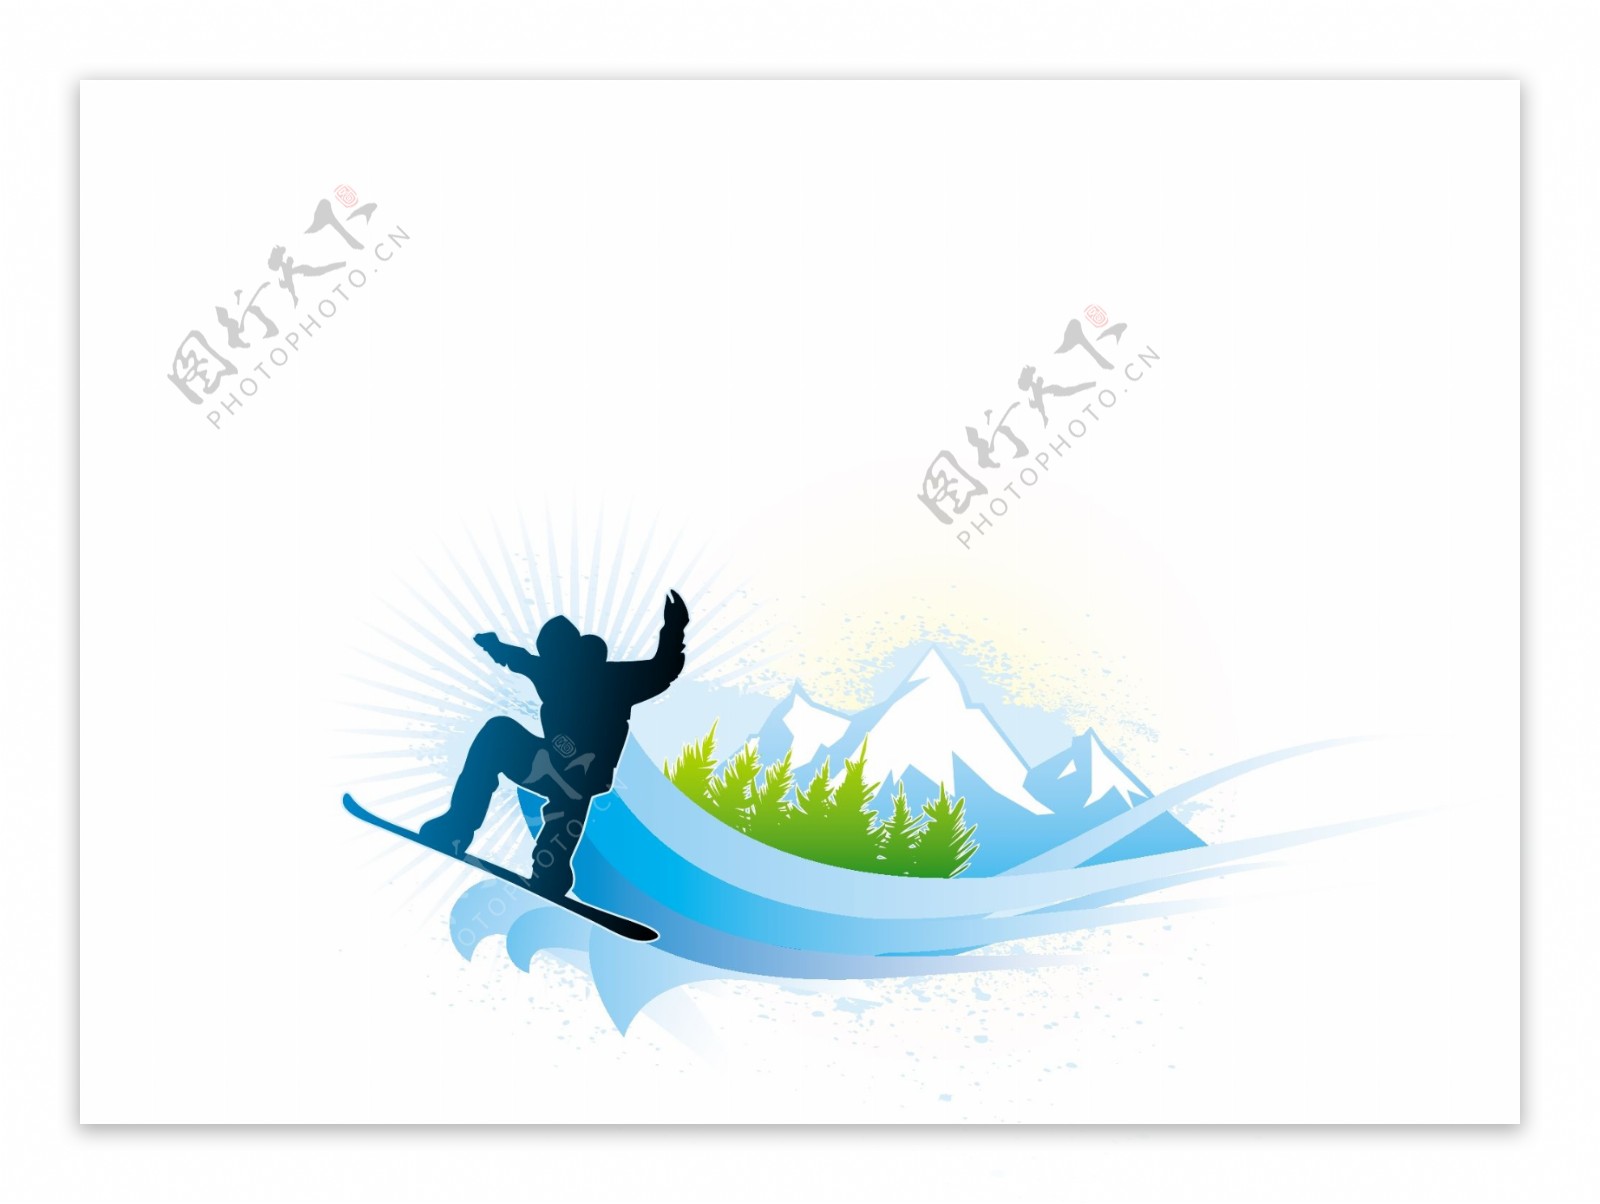 高山滑雪运动滑雪剪影图片